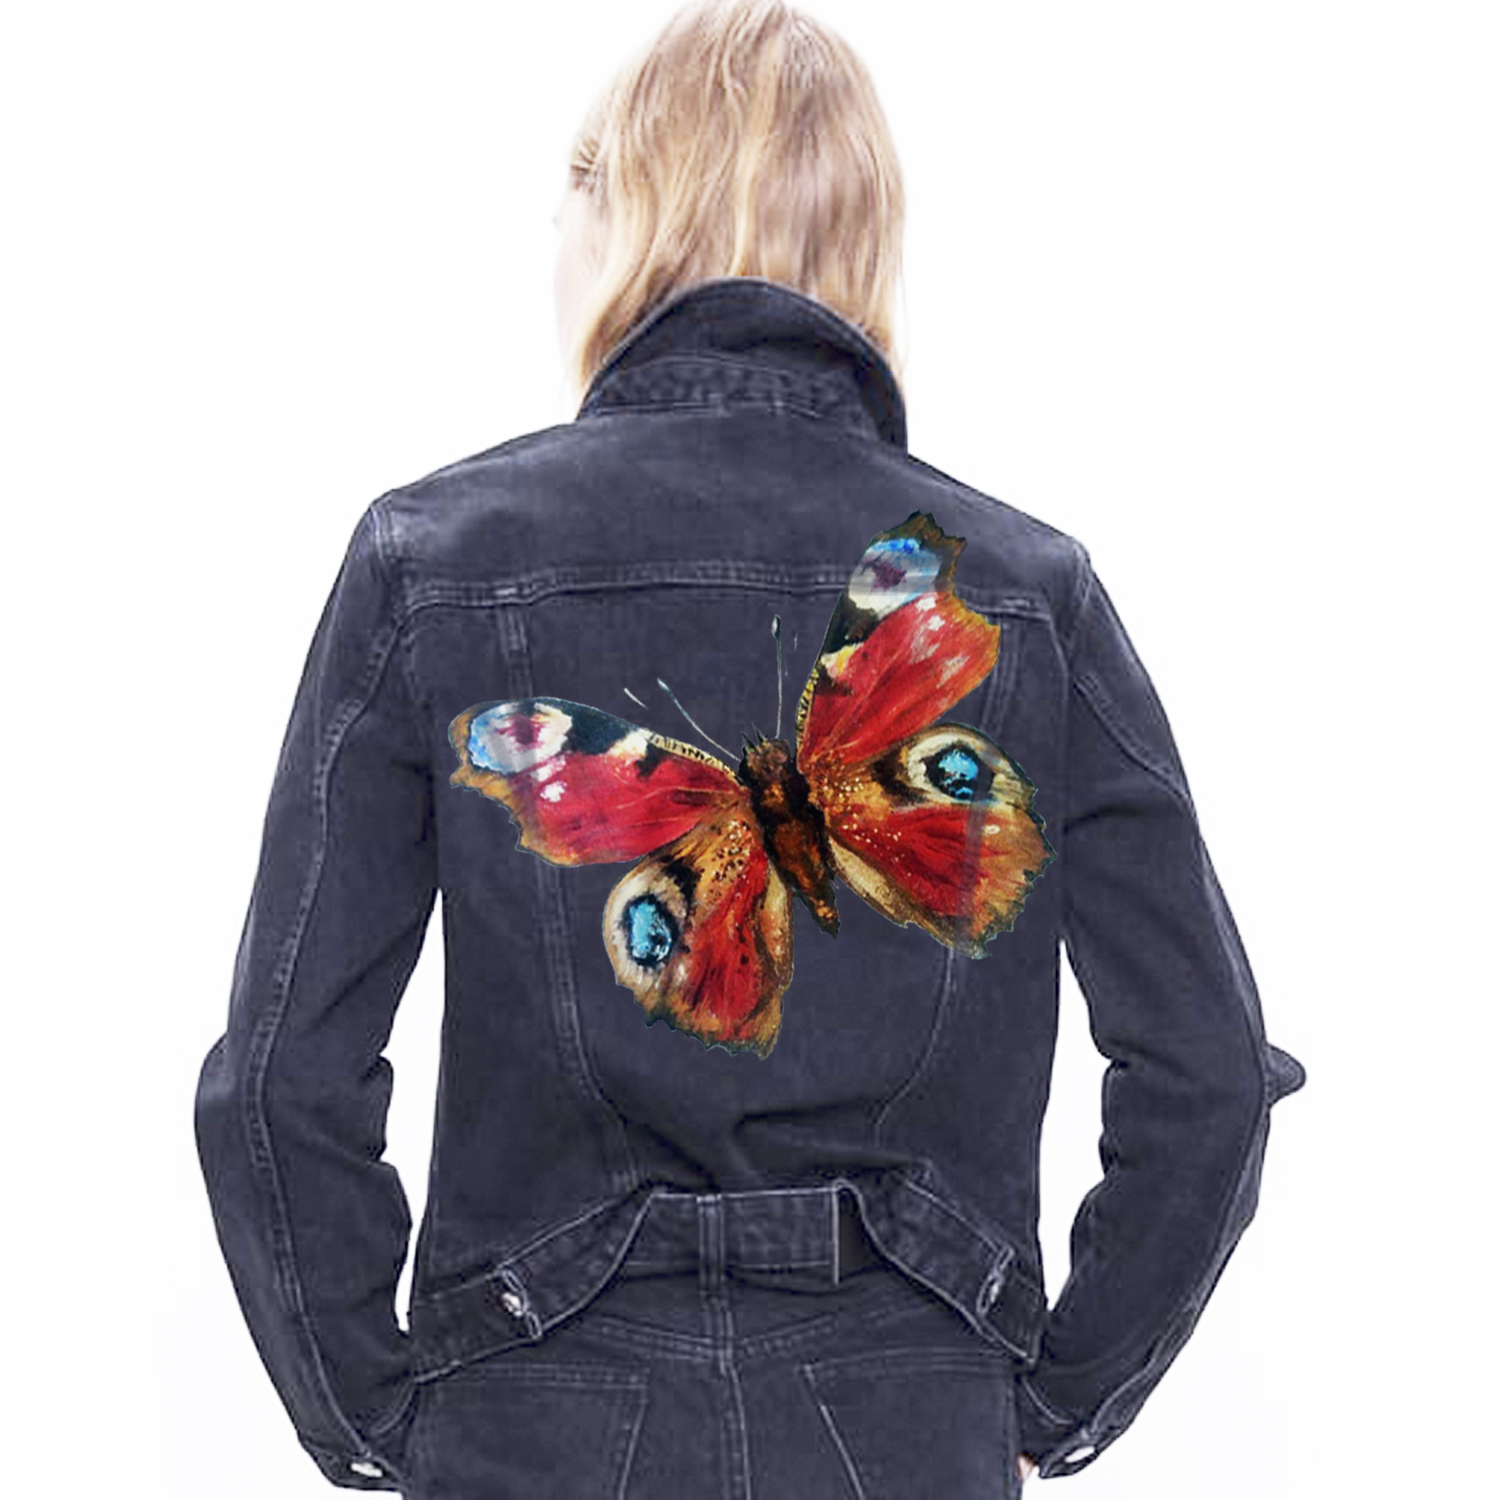 Custom hand painted denim jeans jacket, vest, pet portrait, nature